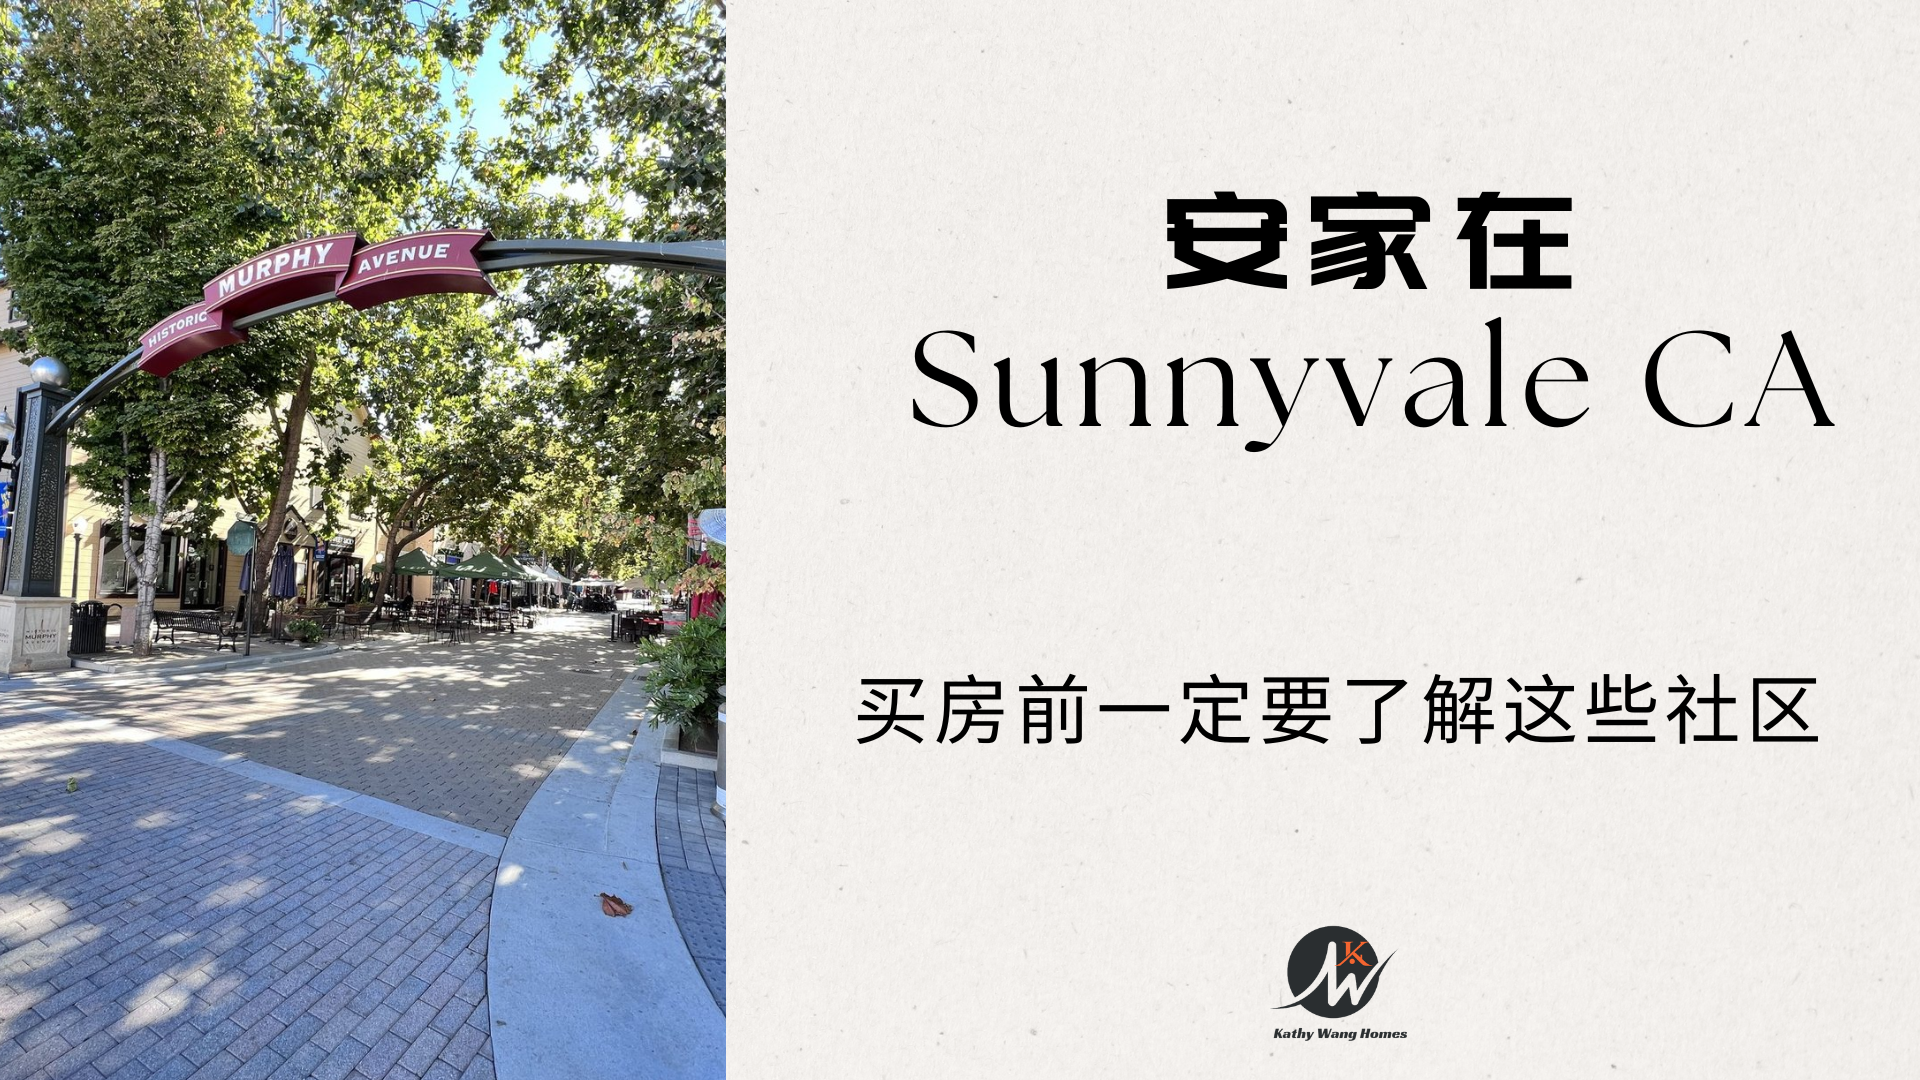 俗称“阳谷市”的Sunnyvale，买房前要了解哪些区域和注意事项？